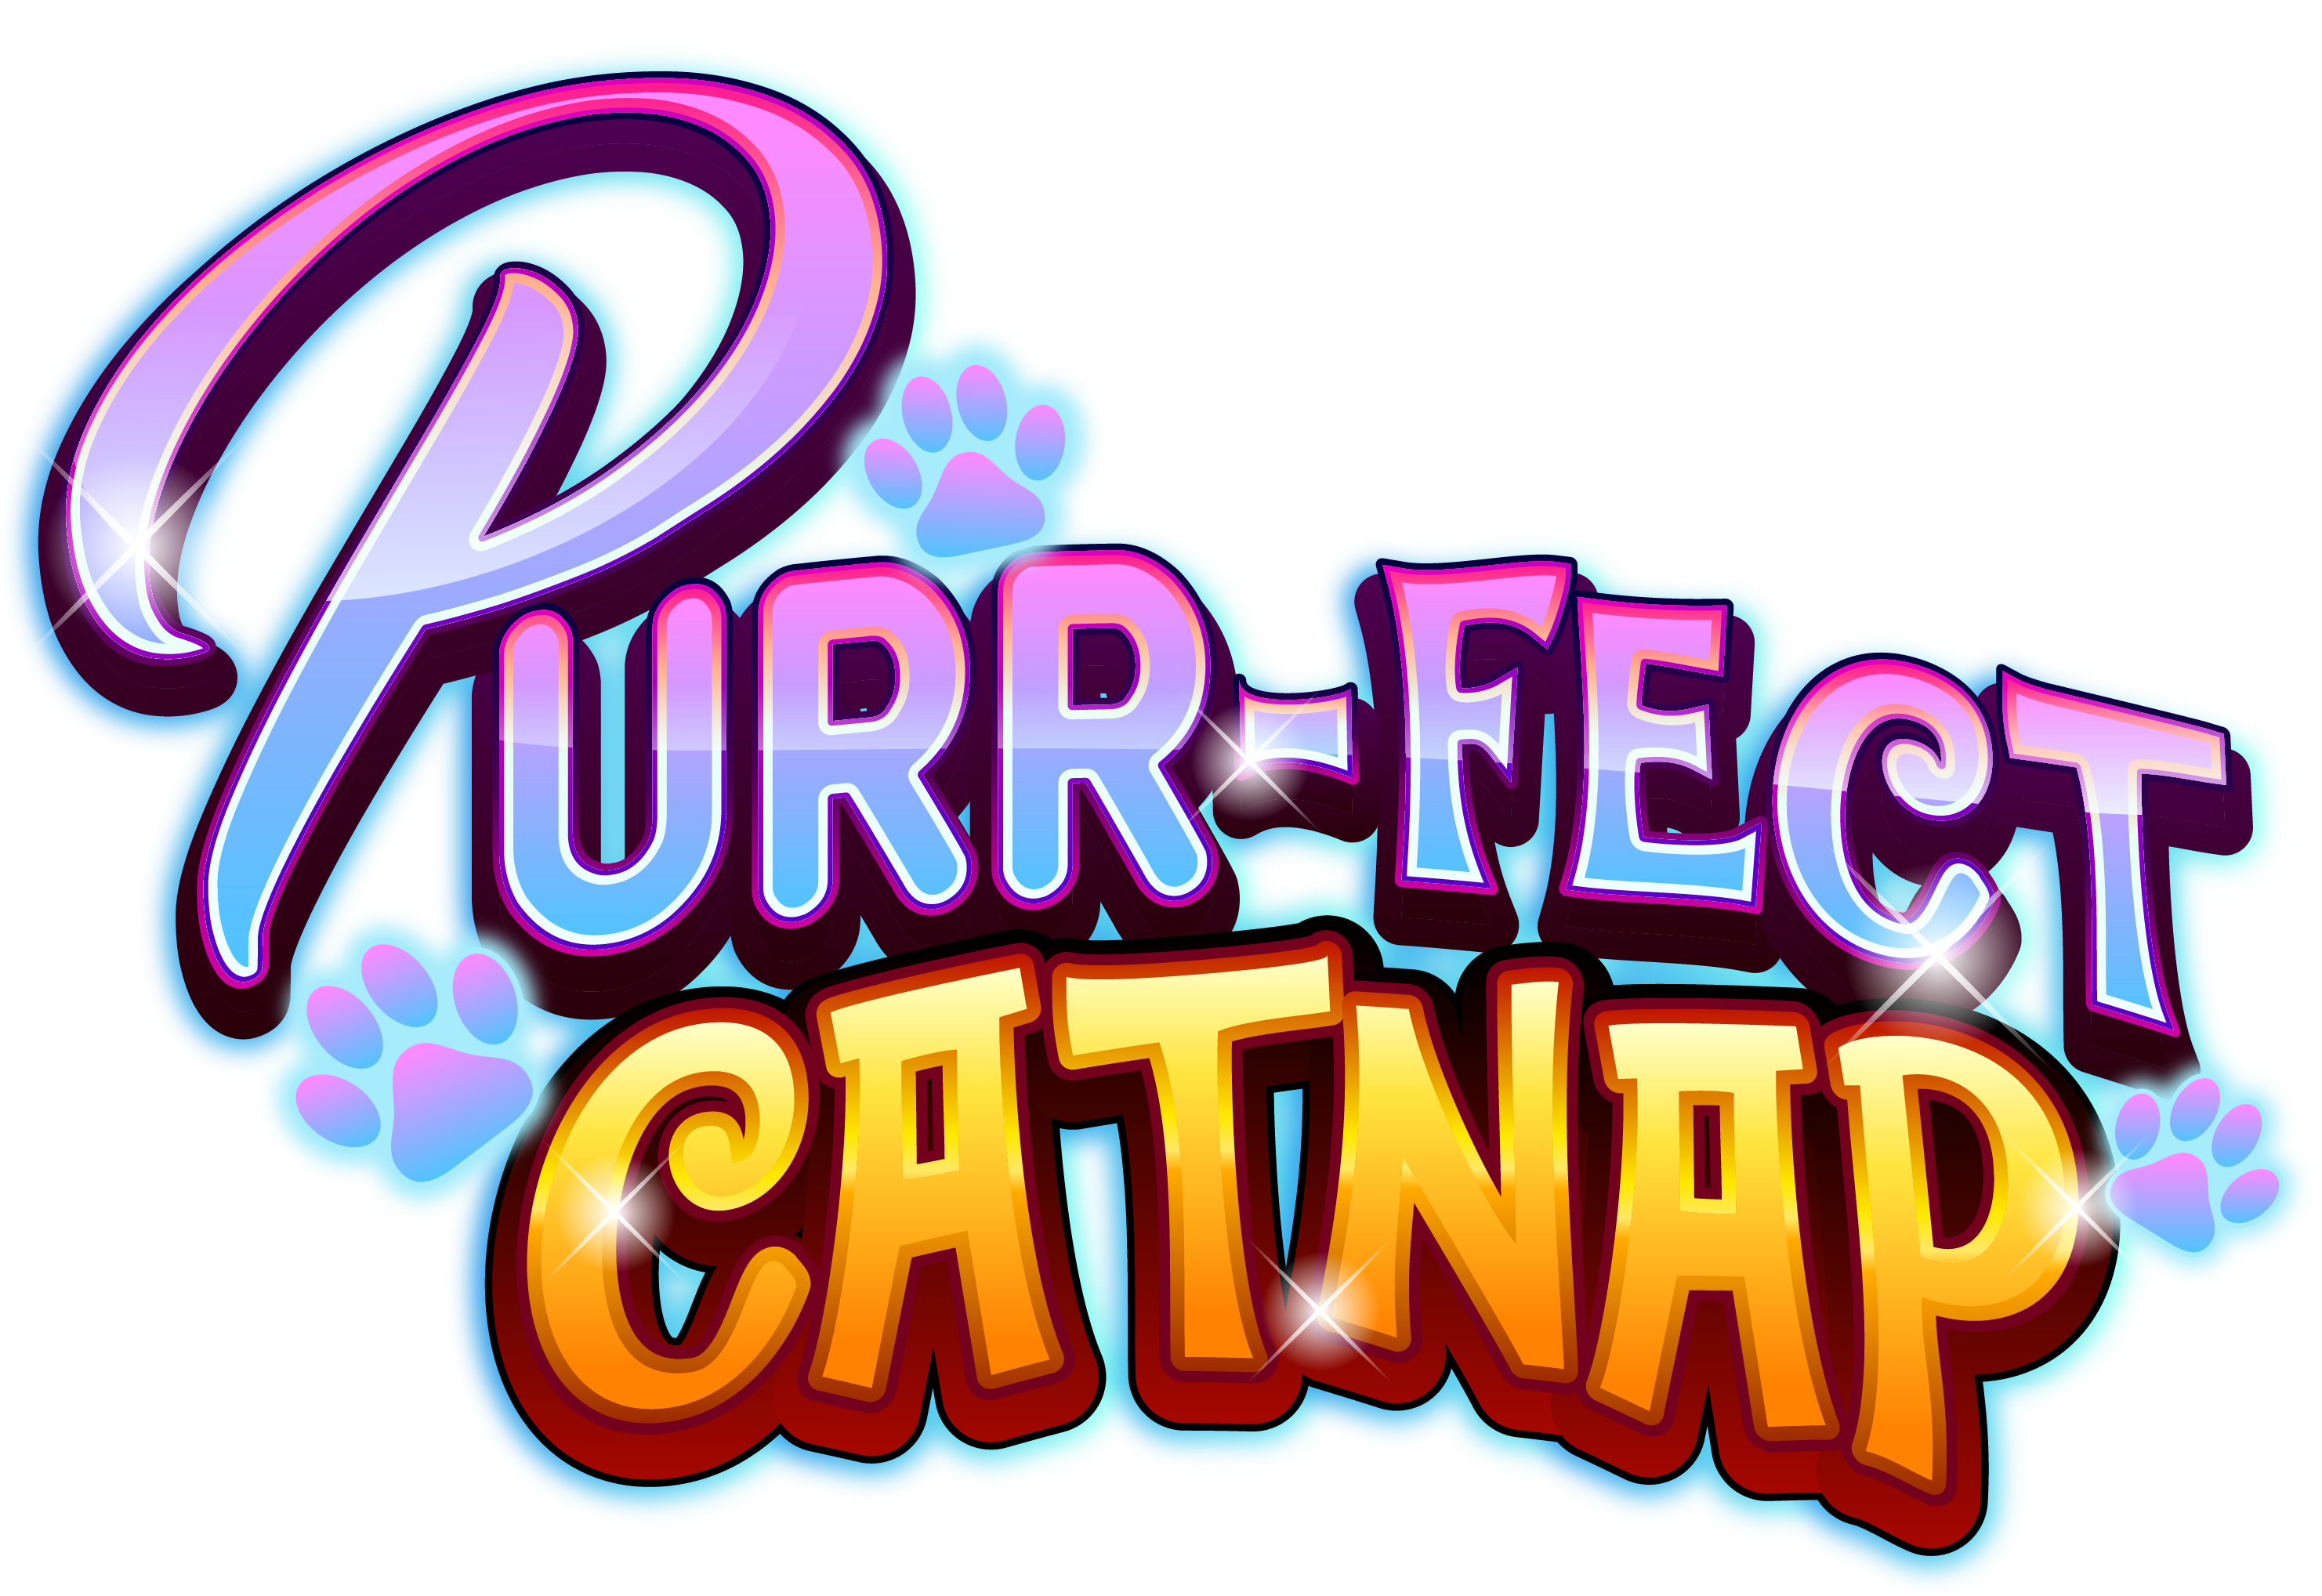 Purr-fect Catnap  Logo Final